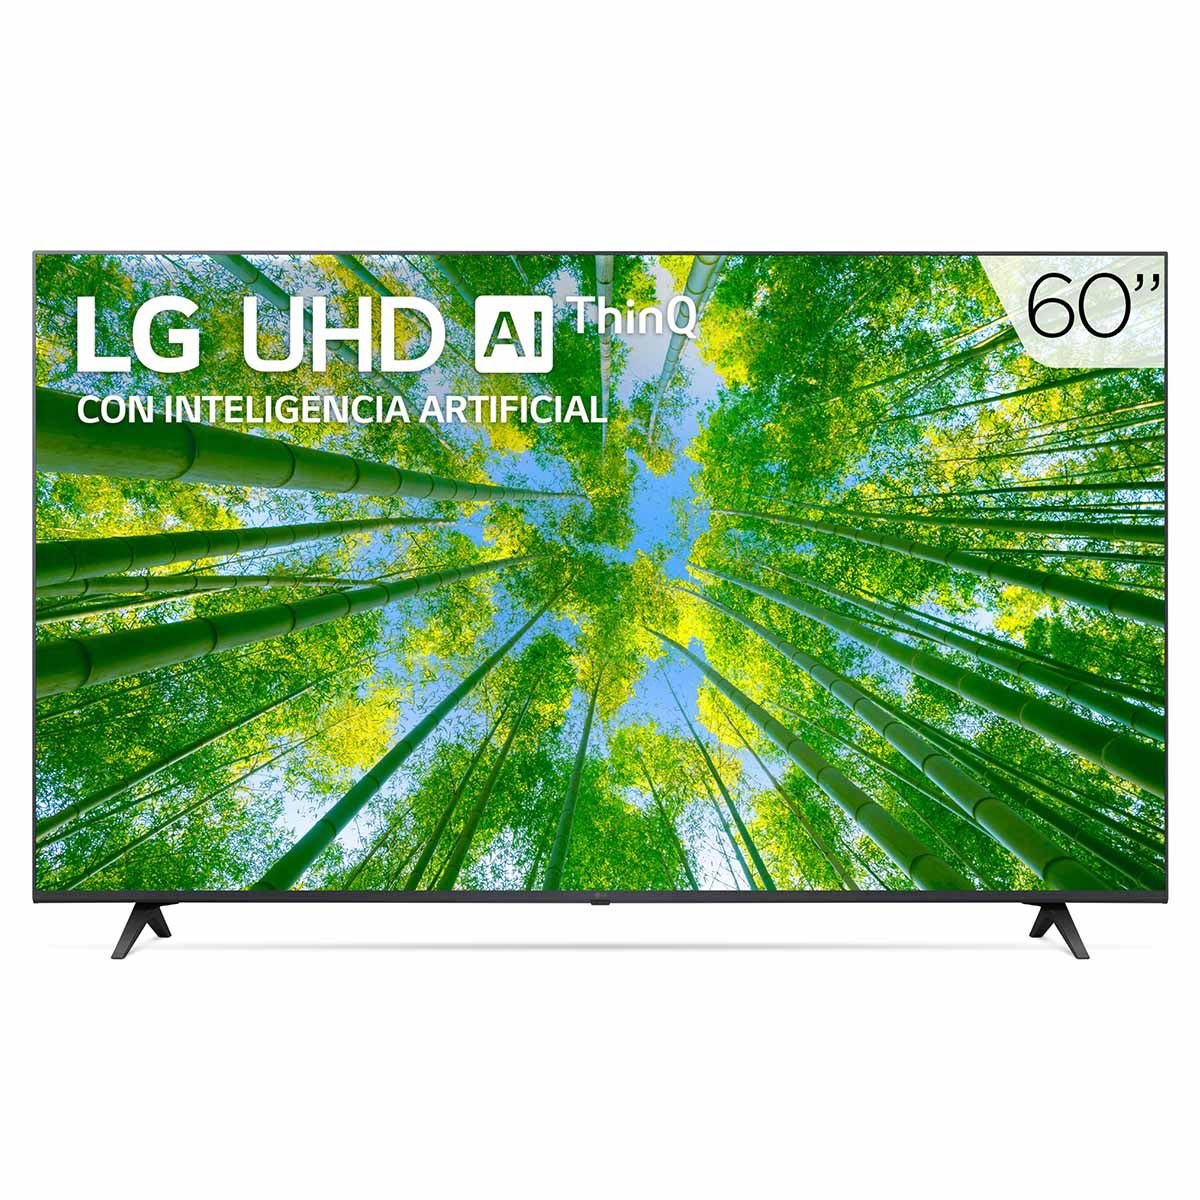 LG Pantalla LG UHD TV AI ThinQ 4K 60